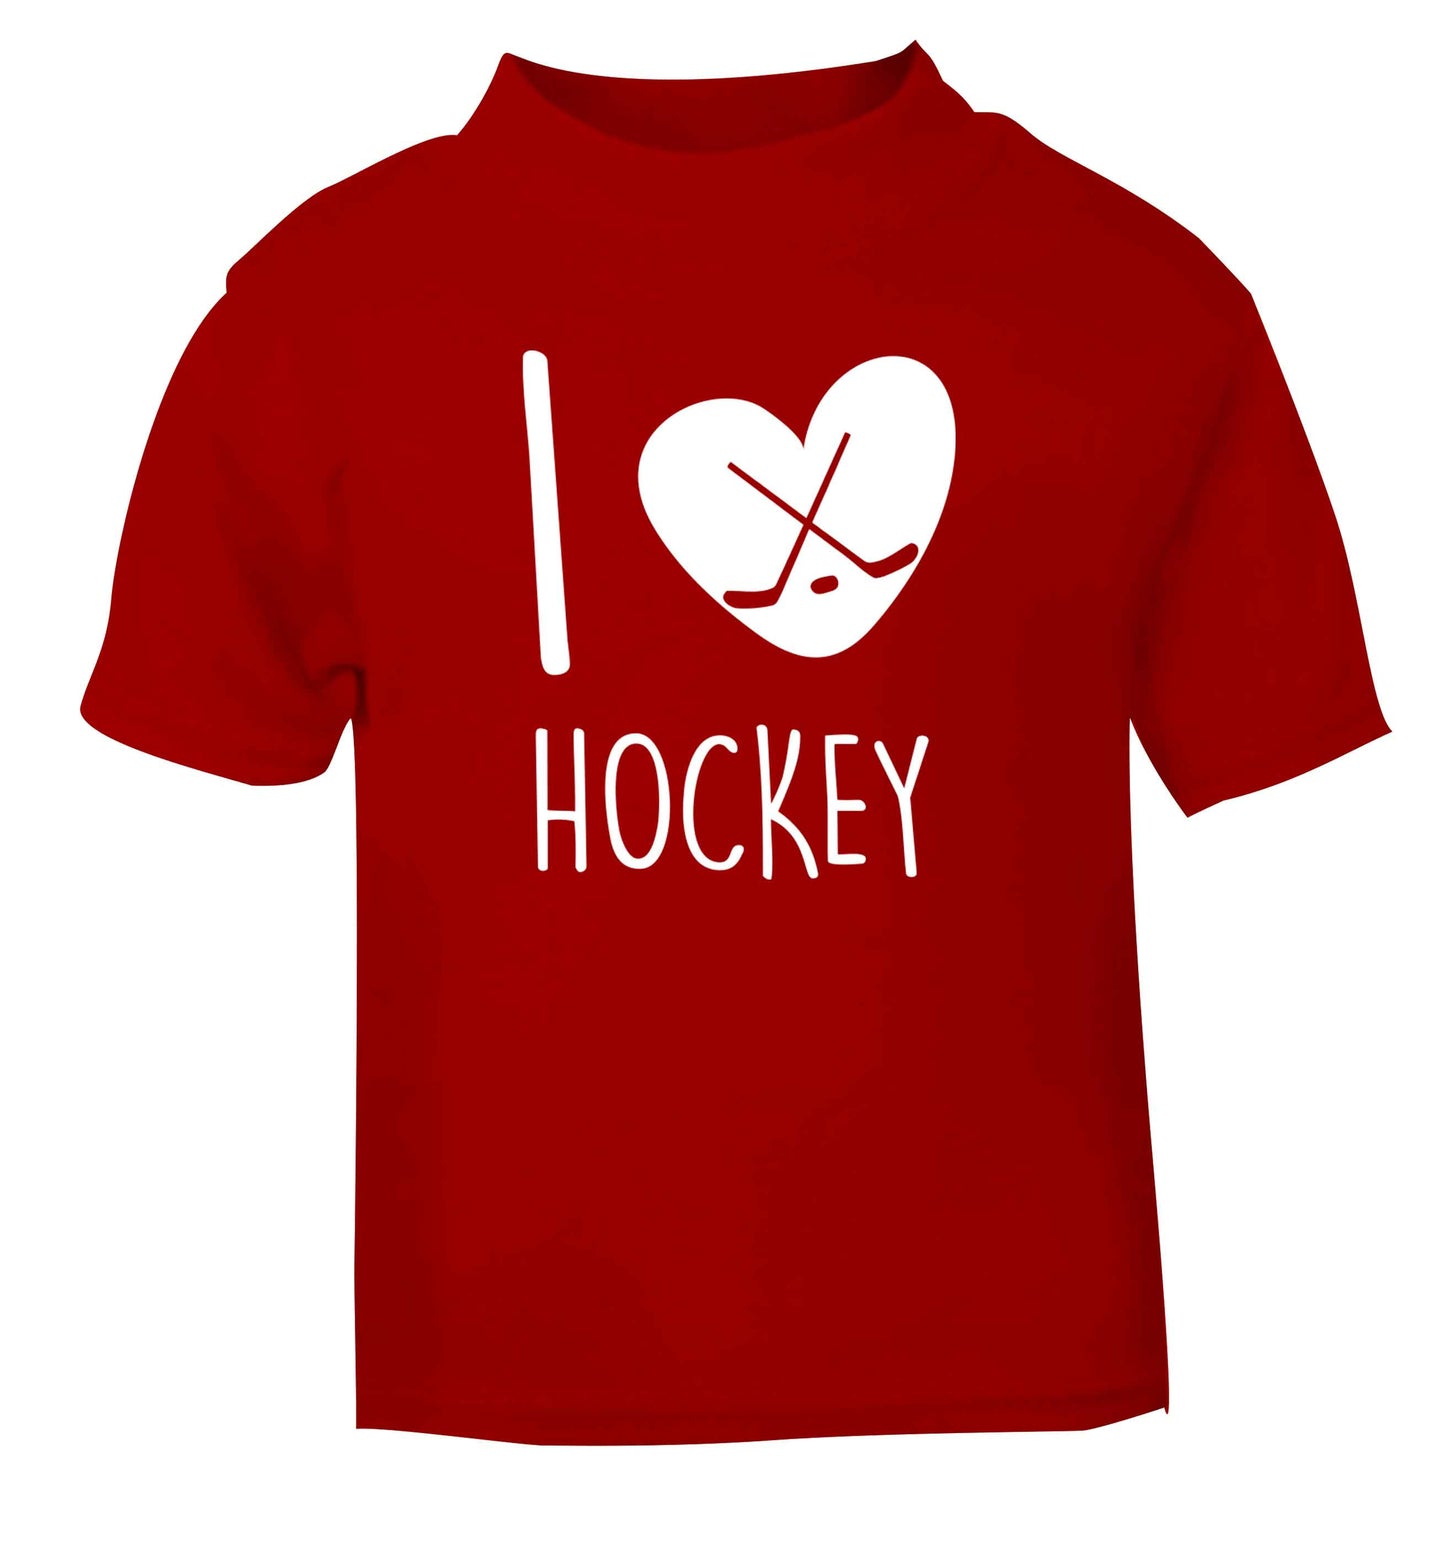 I love hockey red Baby Toddler Tshirt 2 Years